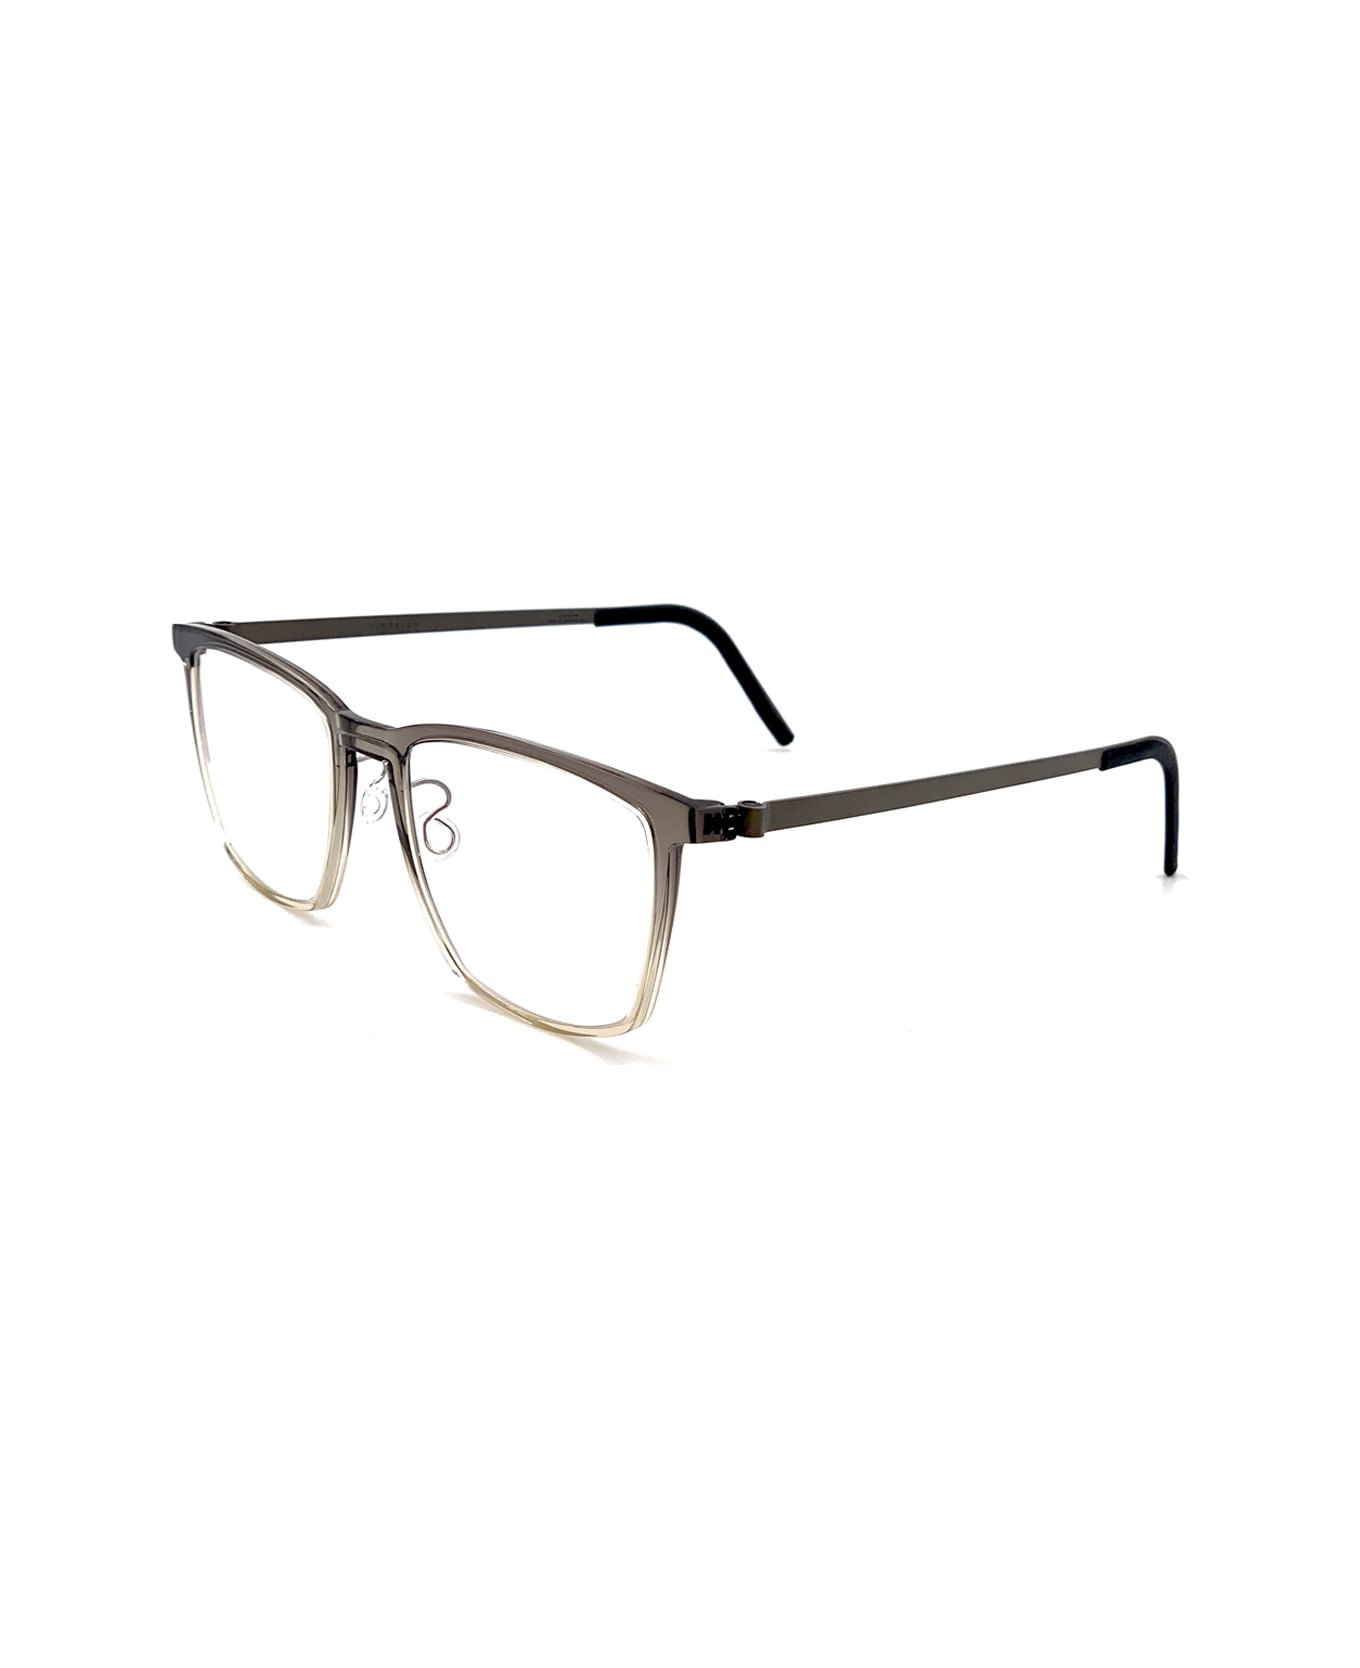 LINDBERG Acetanium 1260 Glasses - Grigio